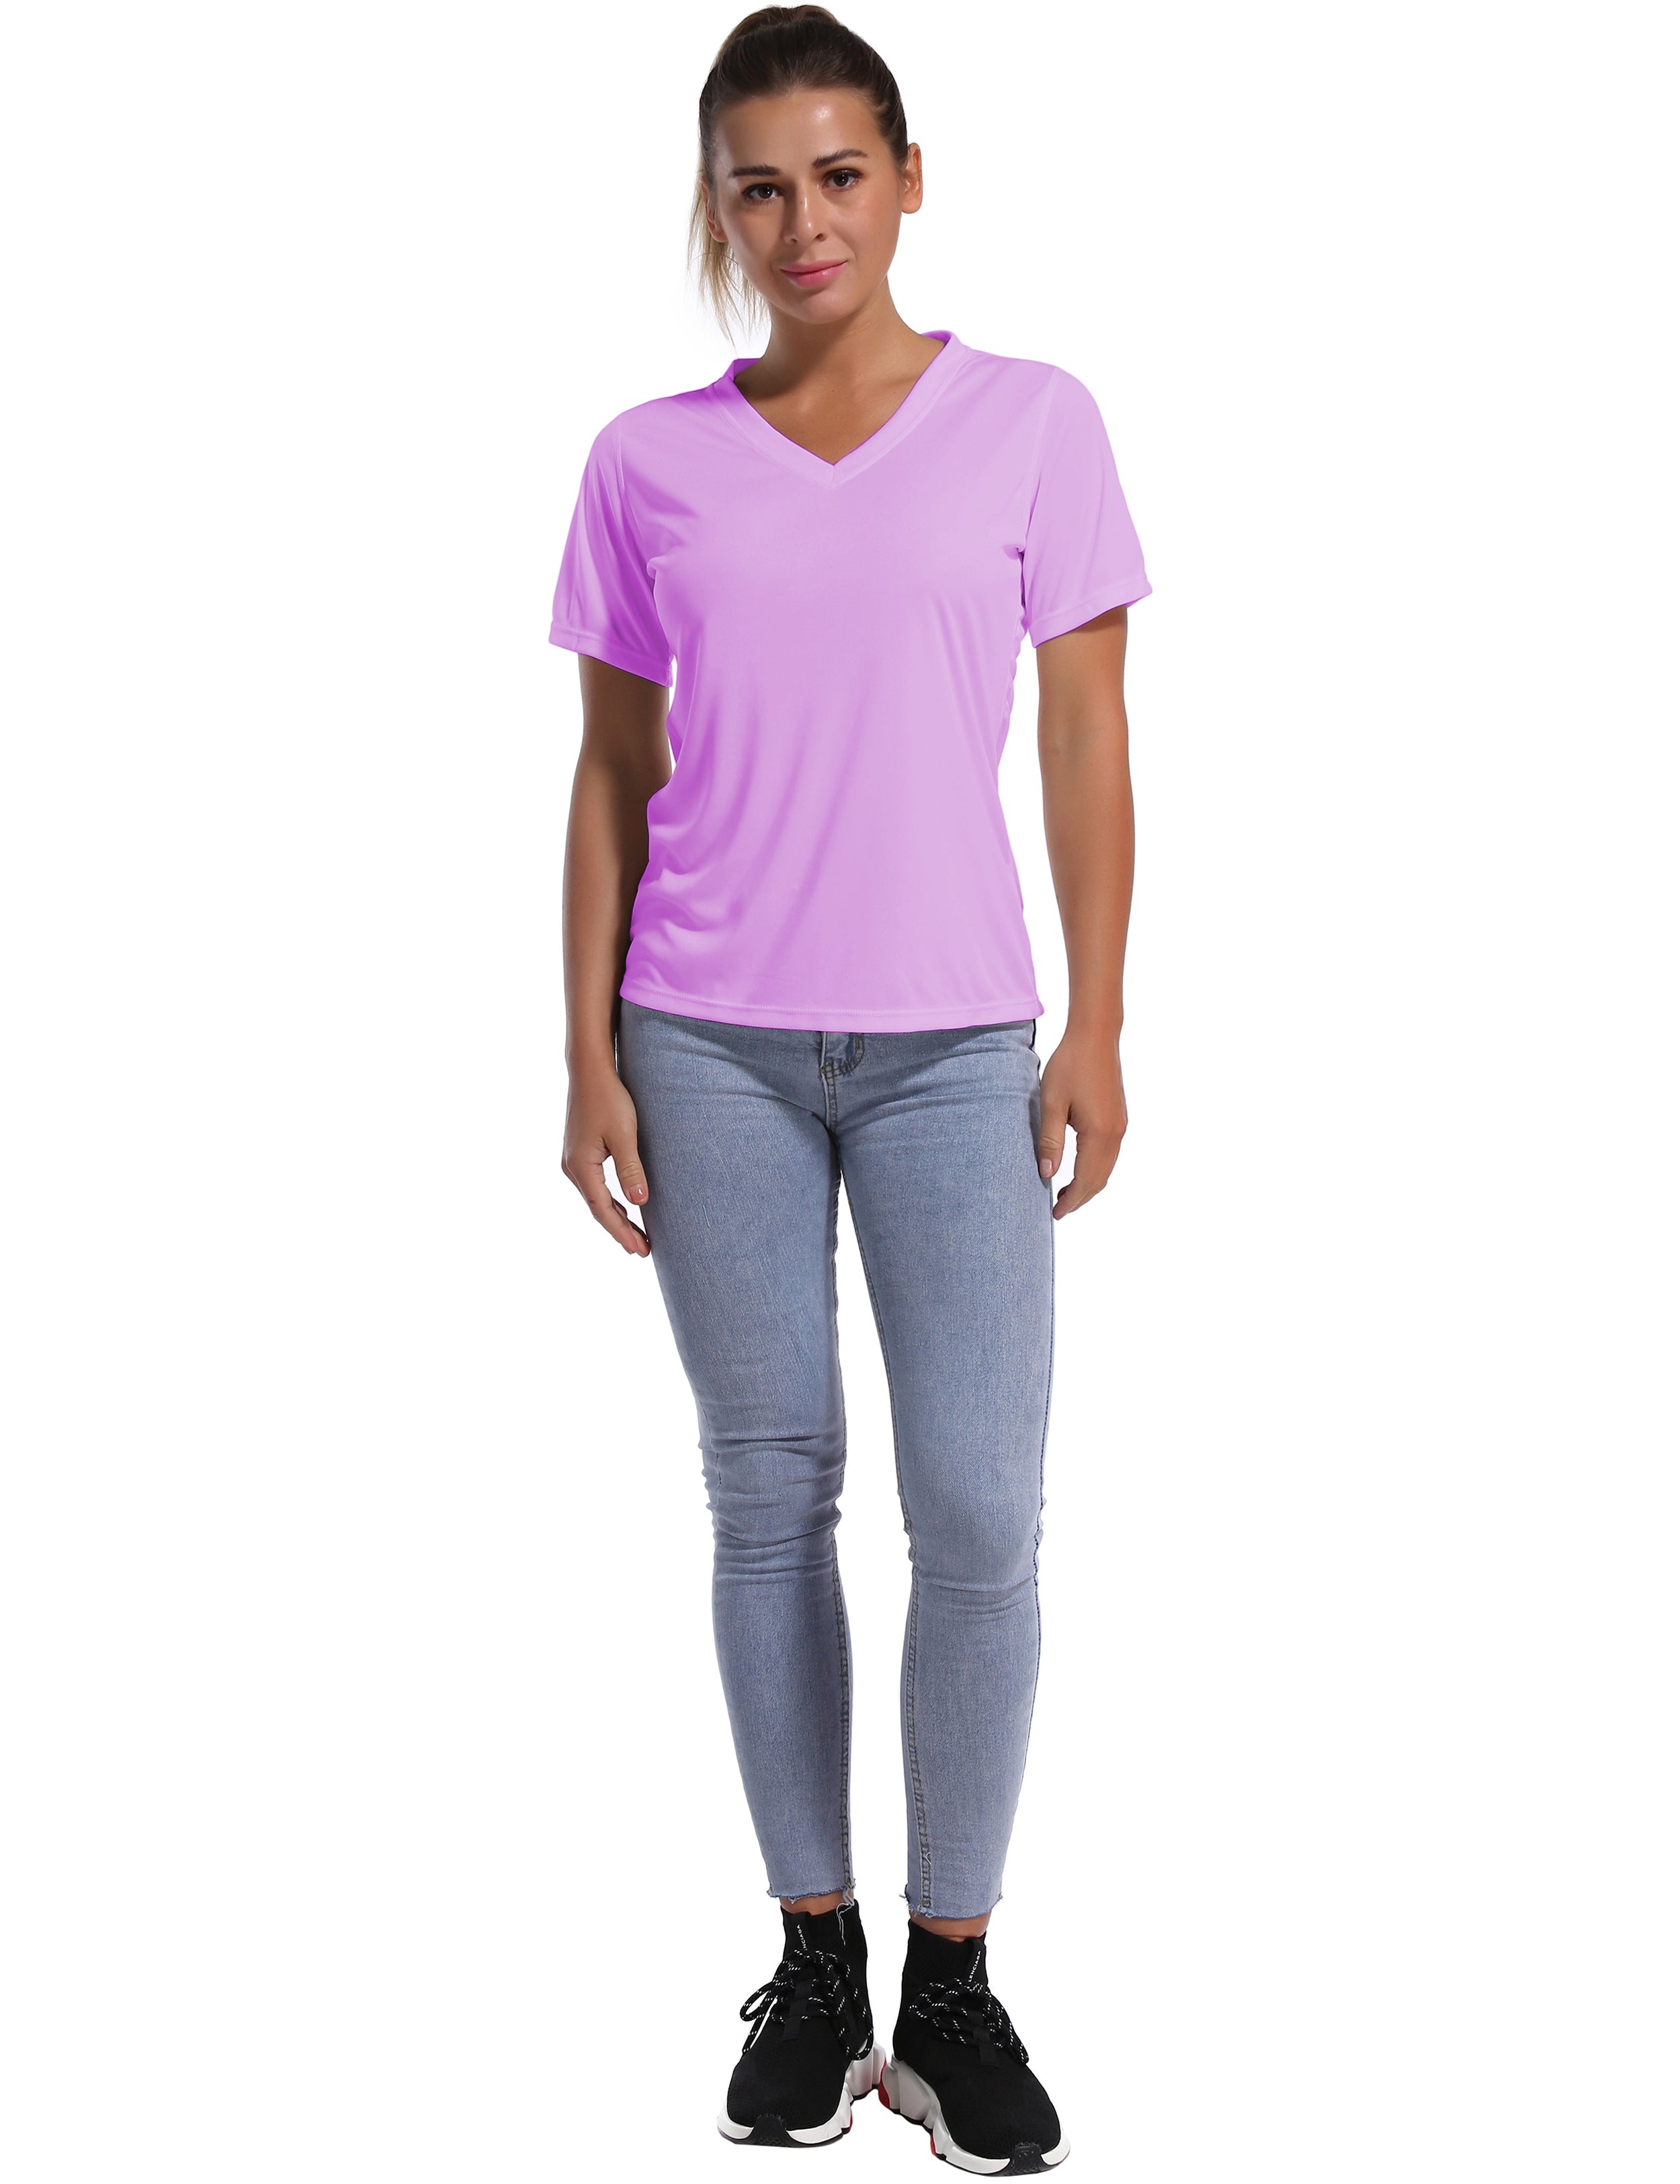 V-Neck Short Sleeve Athletic Shirts purple_Pilates